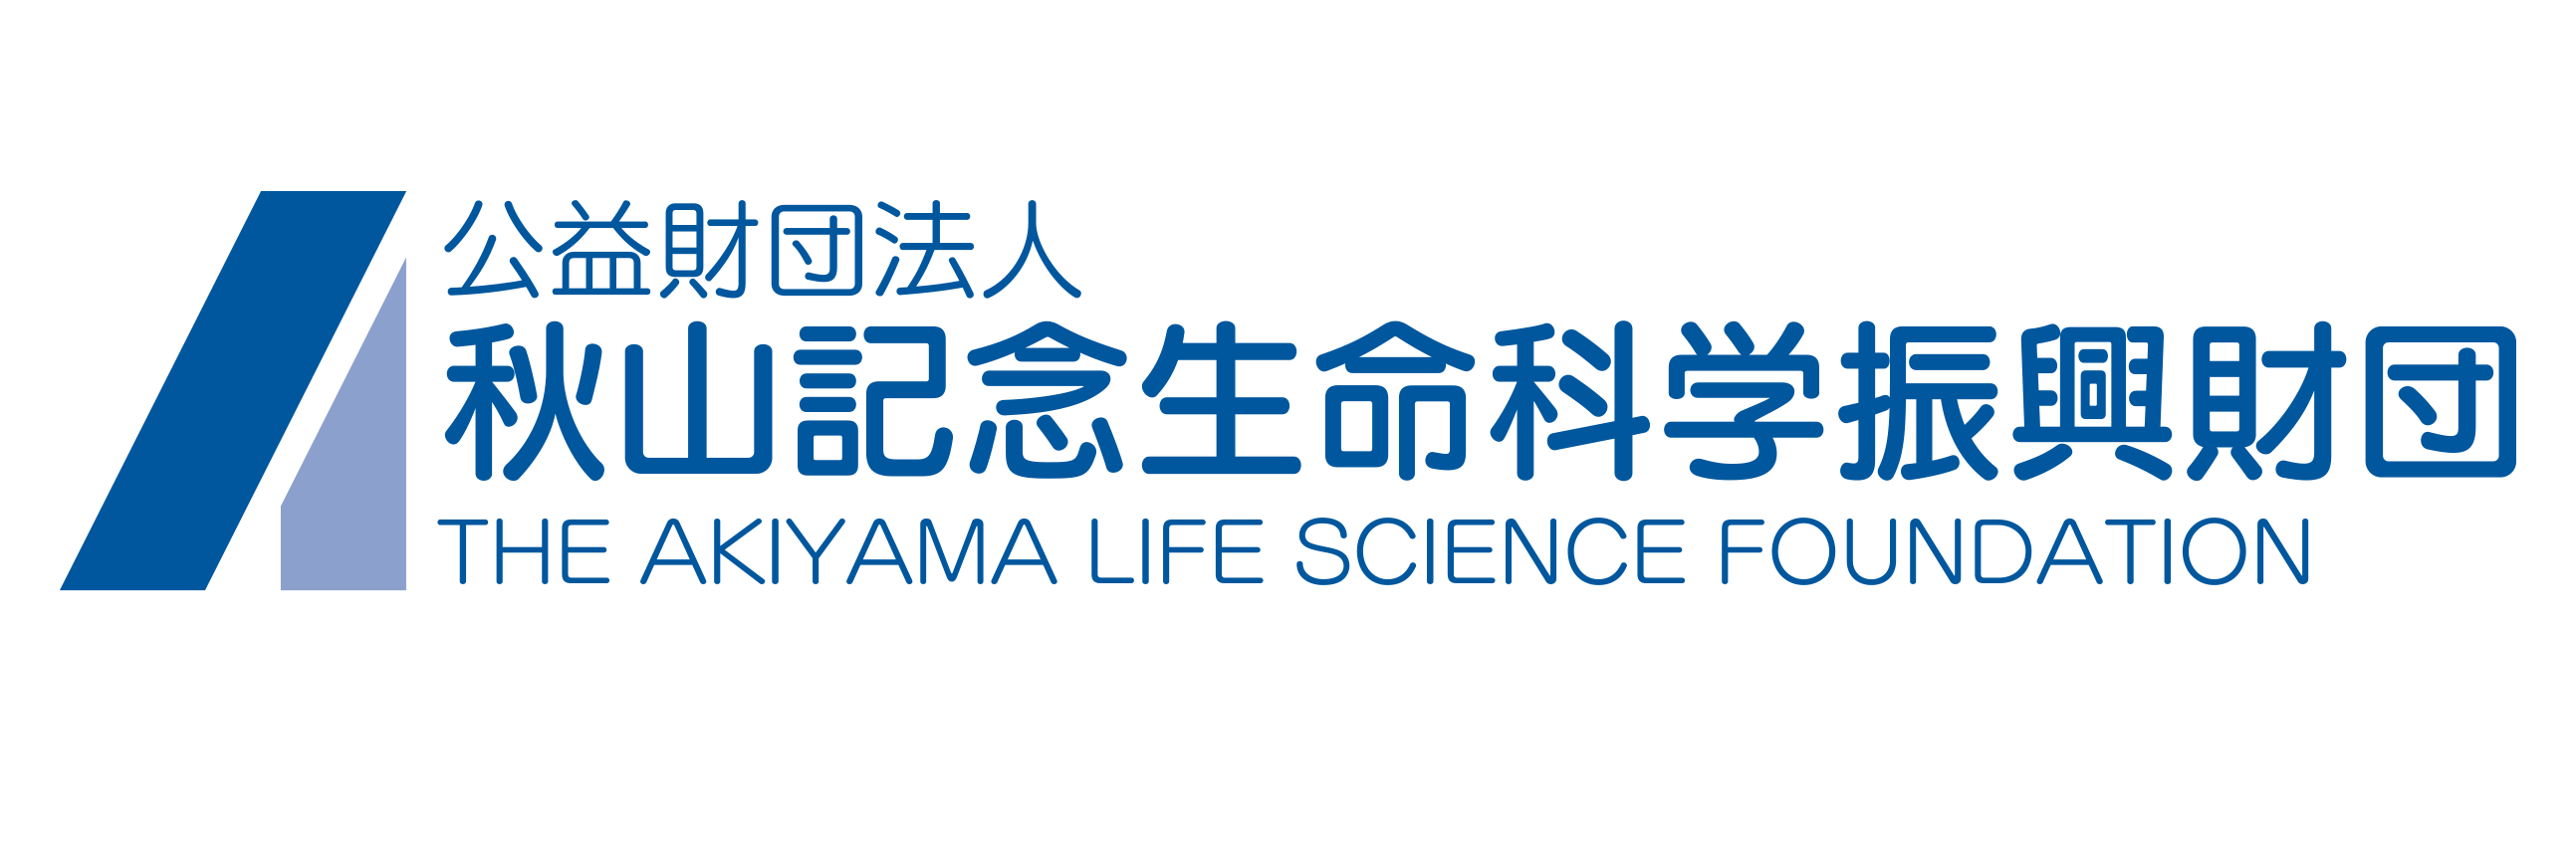 公益財団法人 秋山記念生命科学振興財団